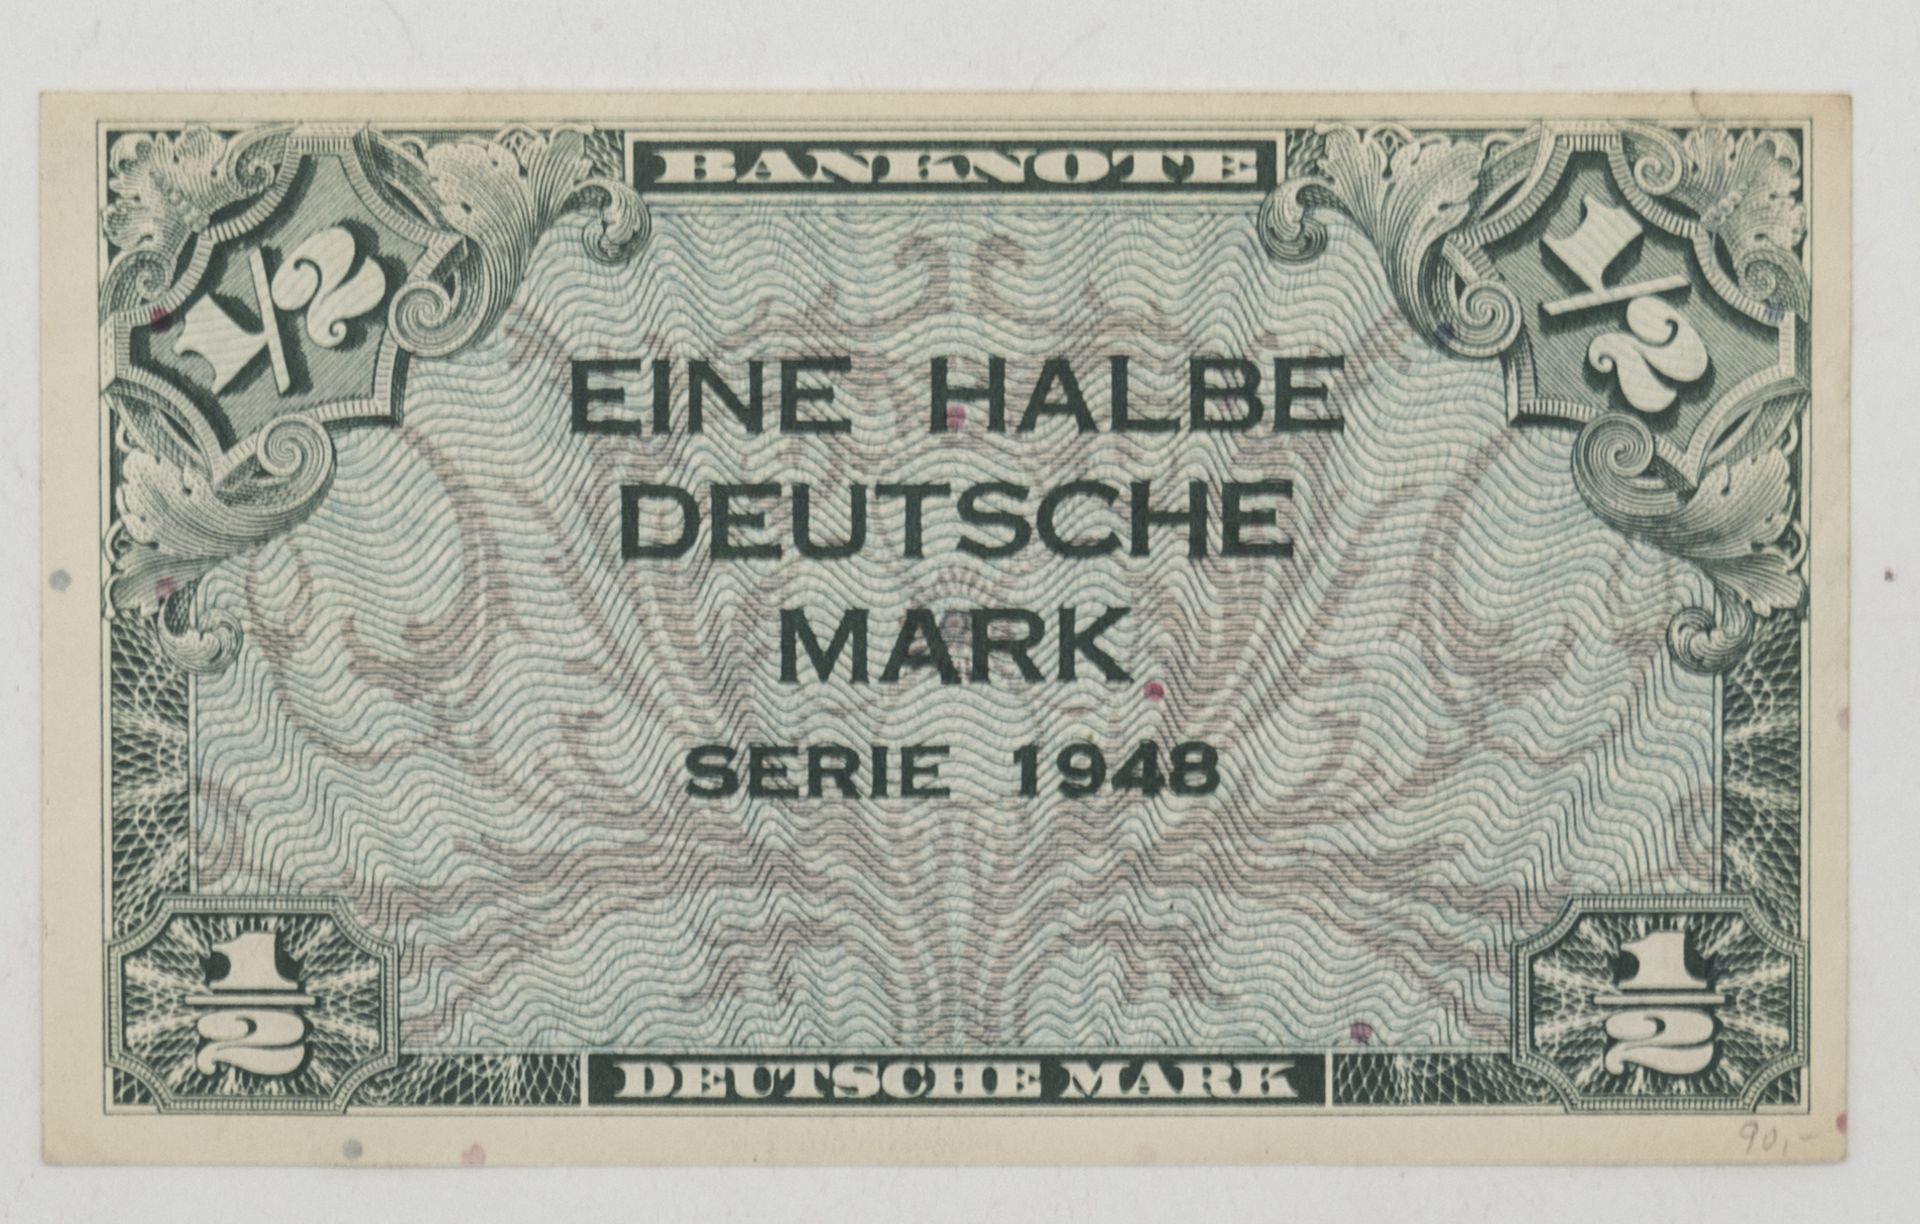 Deutschland 1948 1/2 Deutsche Mark - Banknote. Erhaltung: hervorragend.